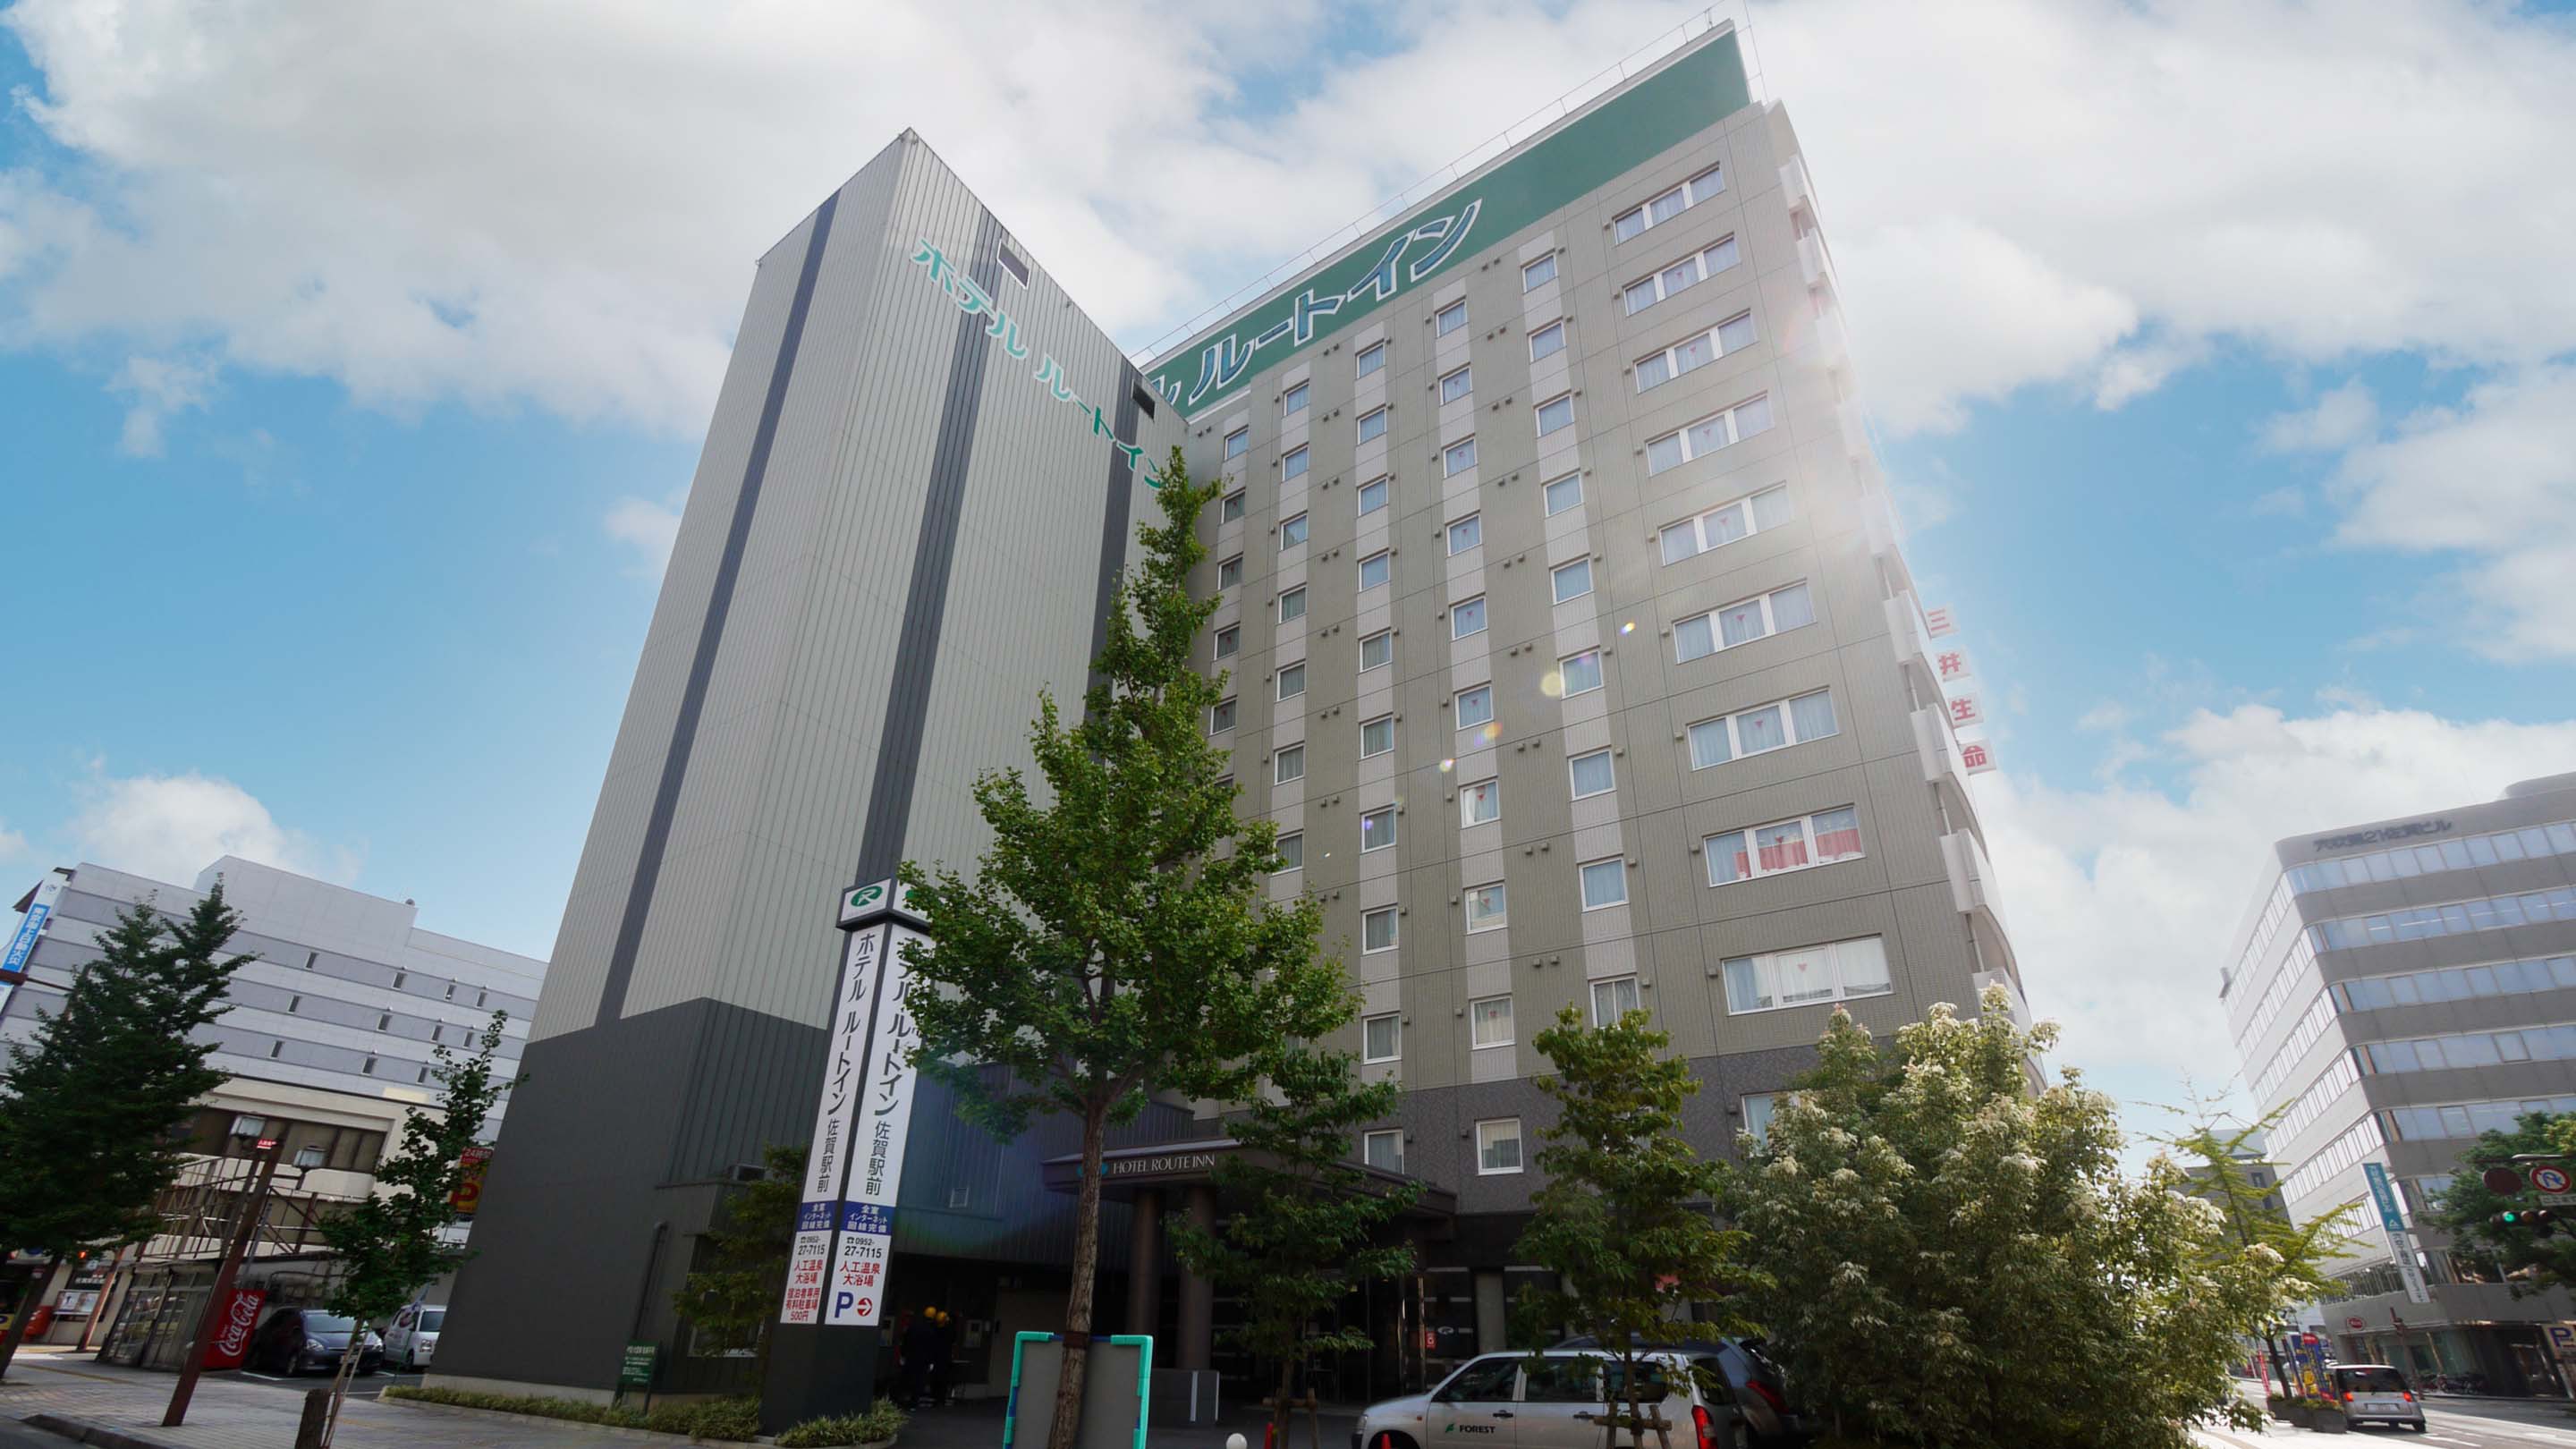 佐賀站前 Route-Inn 飯店